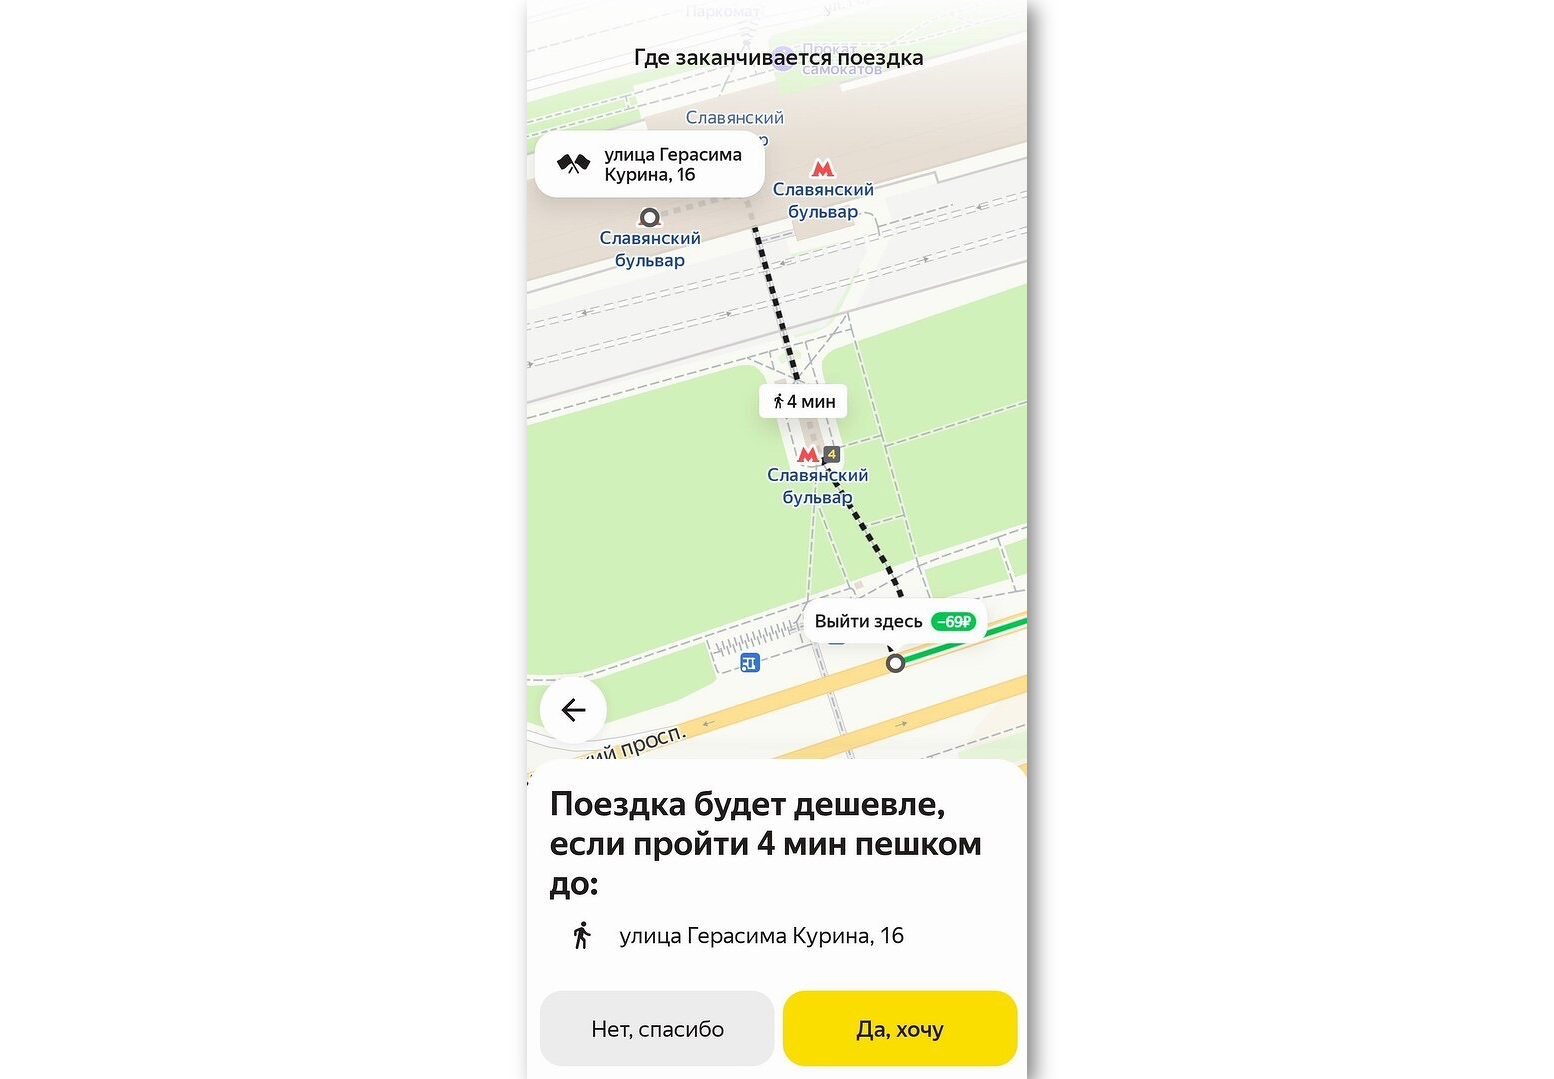 Яндекс.Такси предложит более выгодную точку окончания поездки